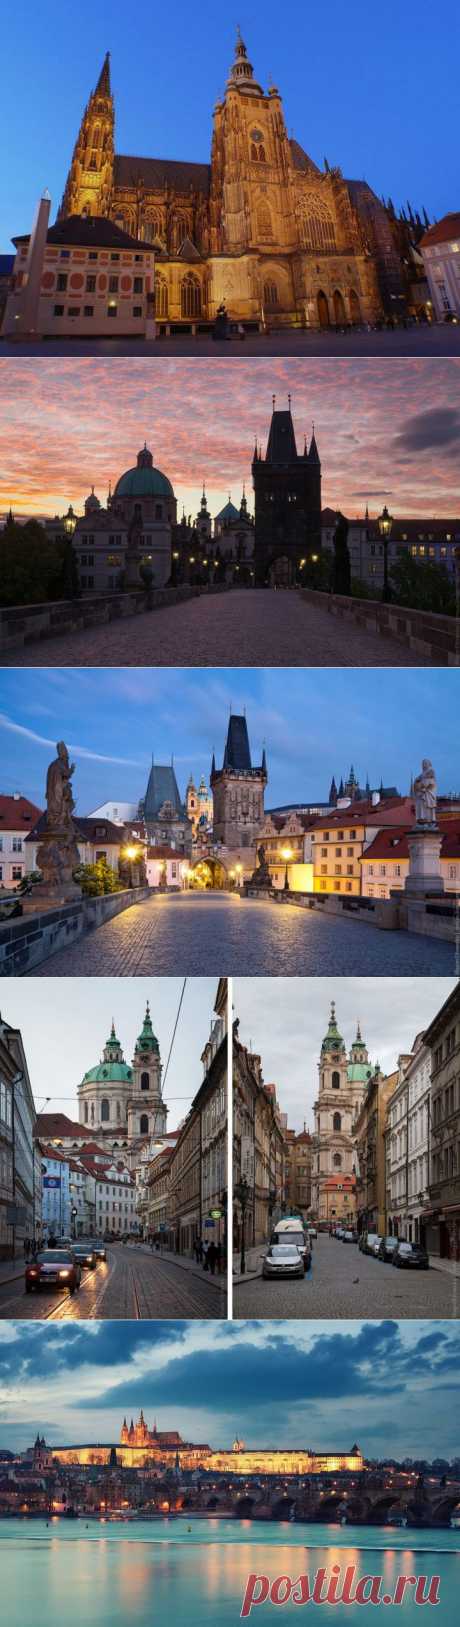 (+1) комм - Прогулка по Праге | Непутевые заметки